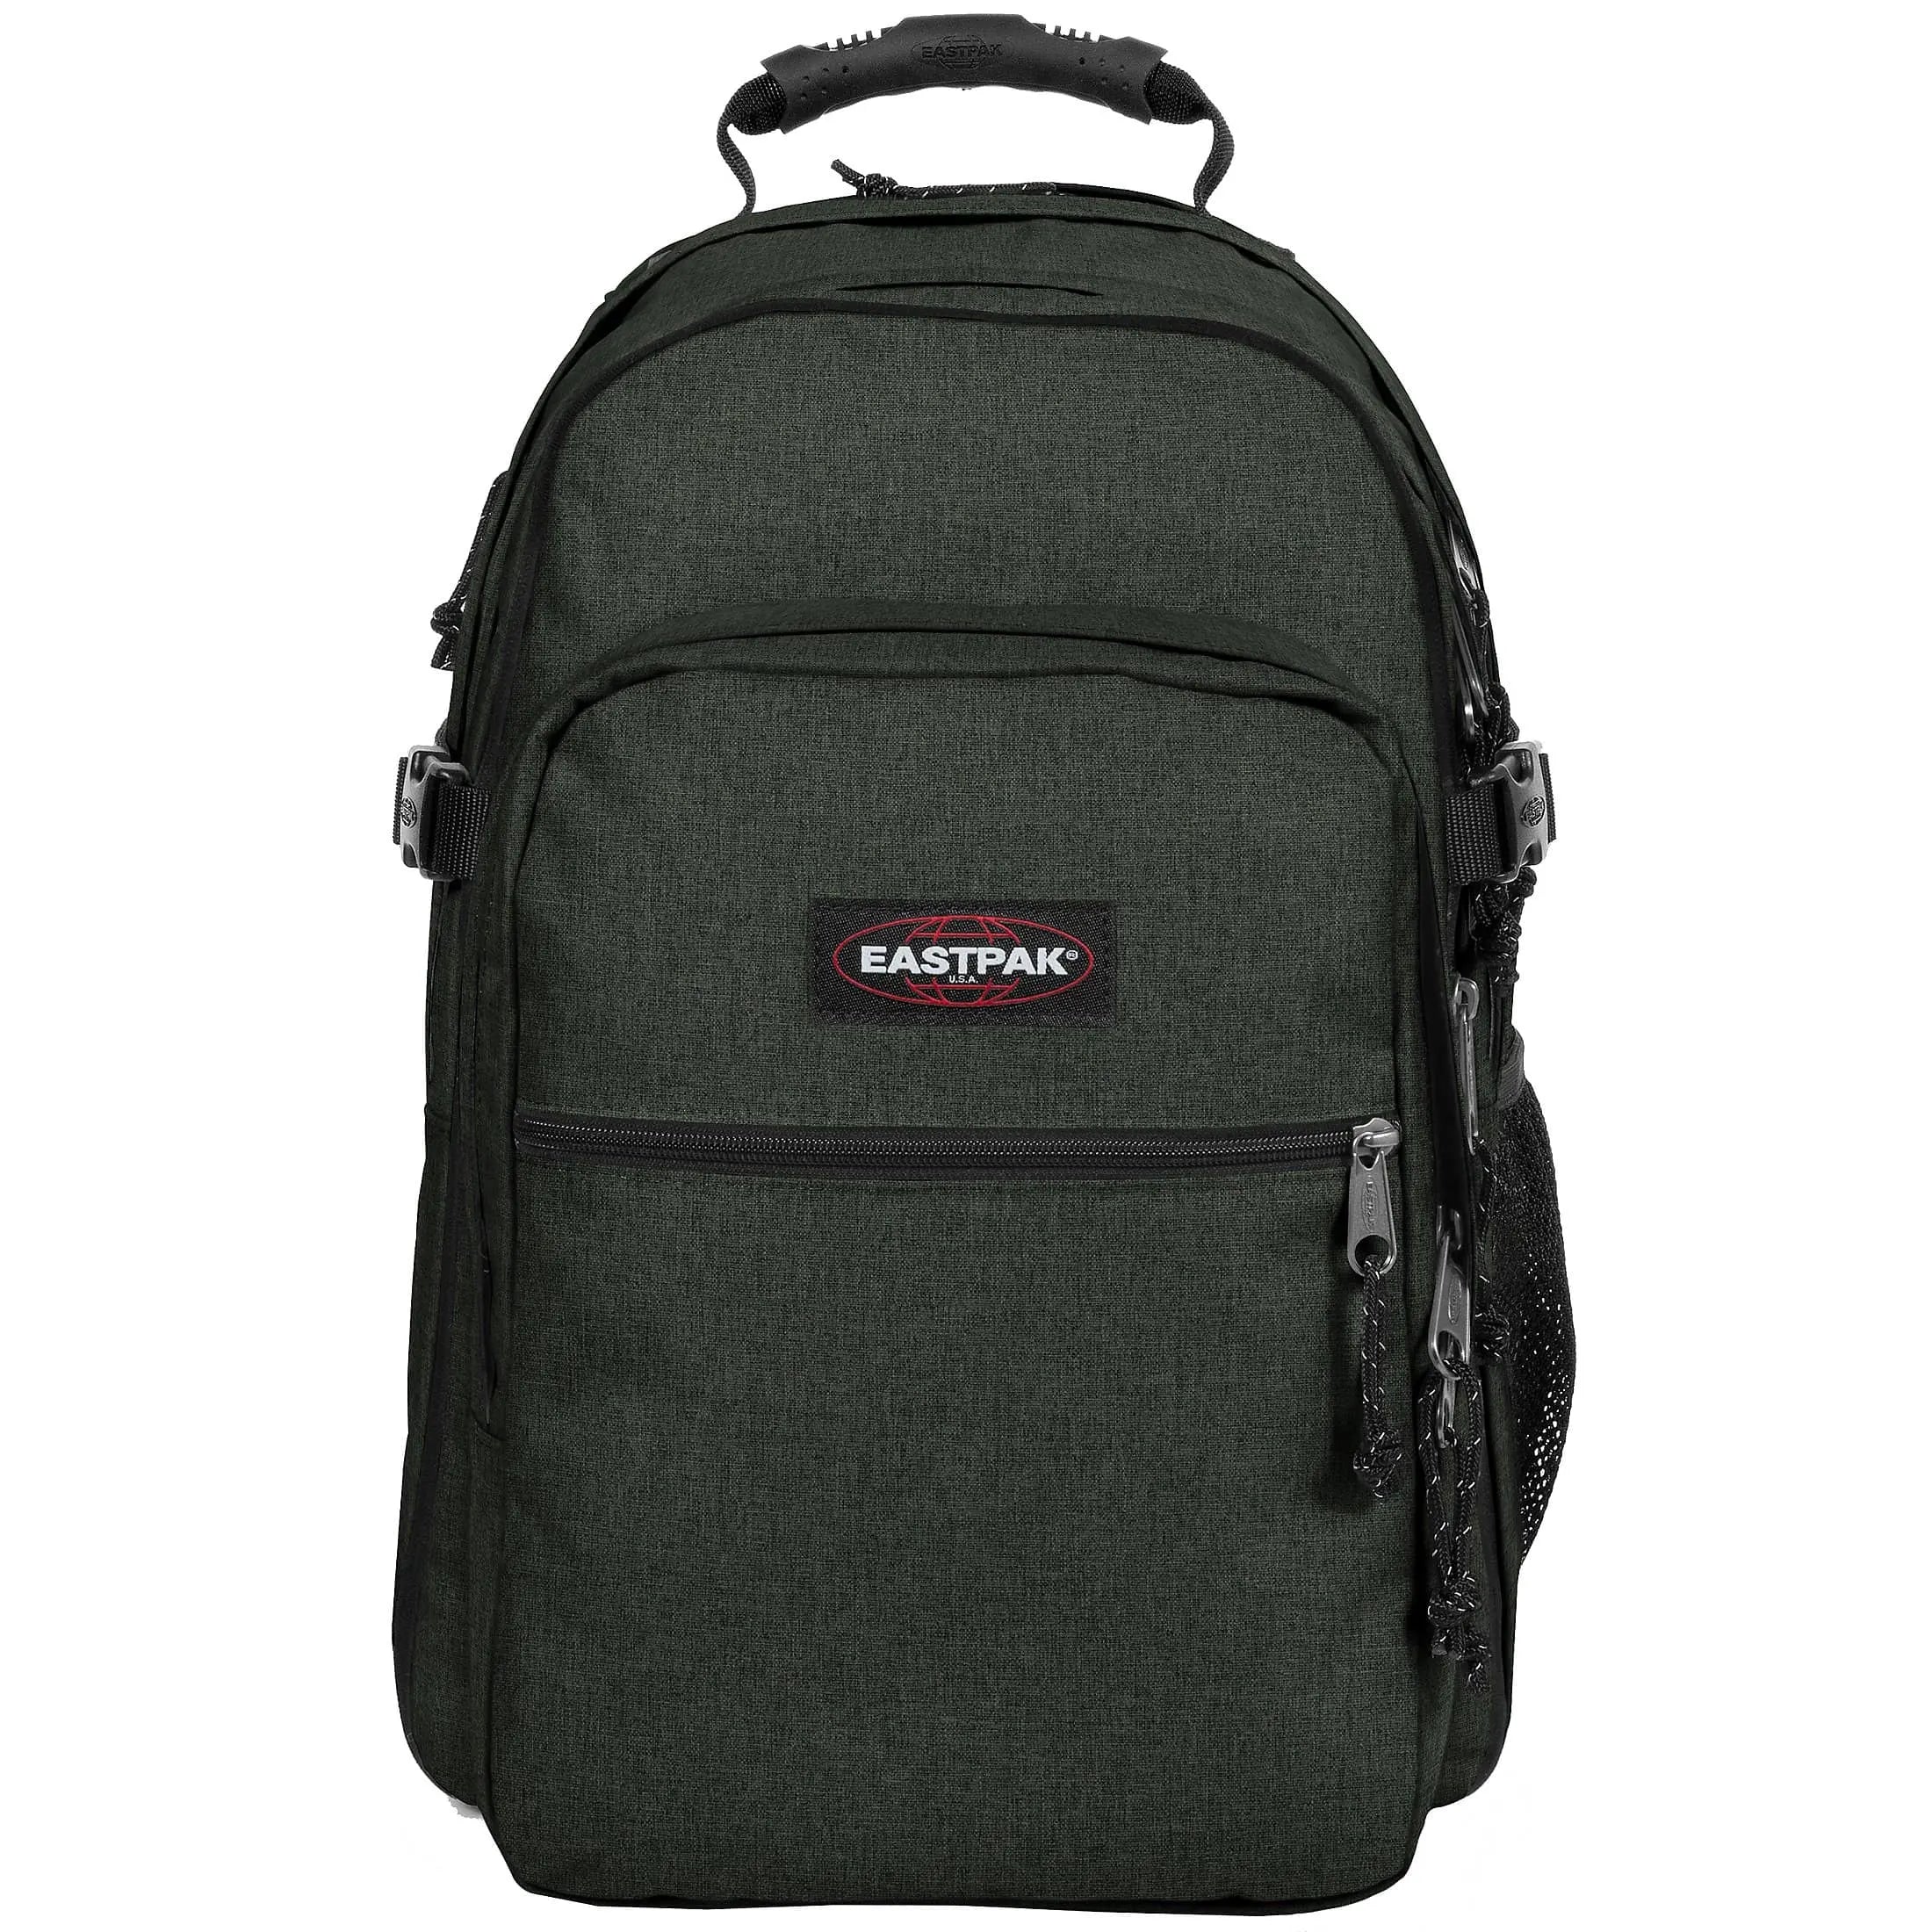 Eastpak Authentic Re-Check Tutor sac à dos avec compartiment pour ordinateur portable 48 cm - mousse artisanale